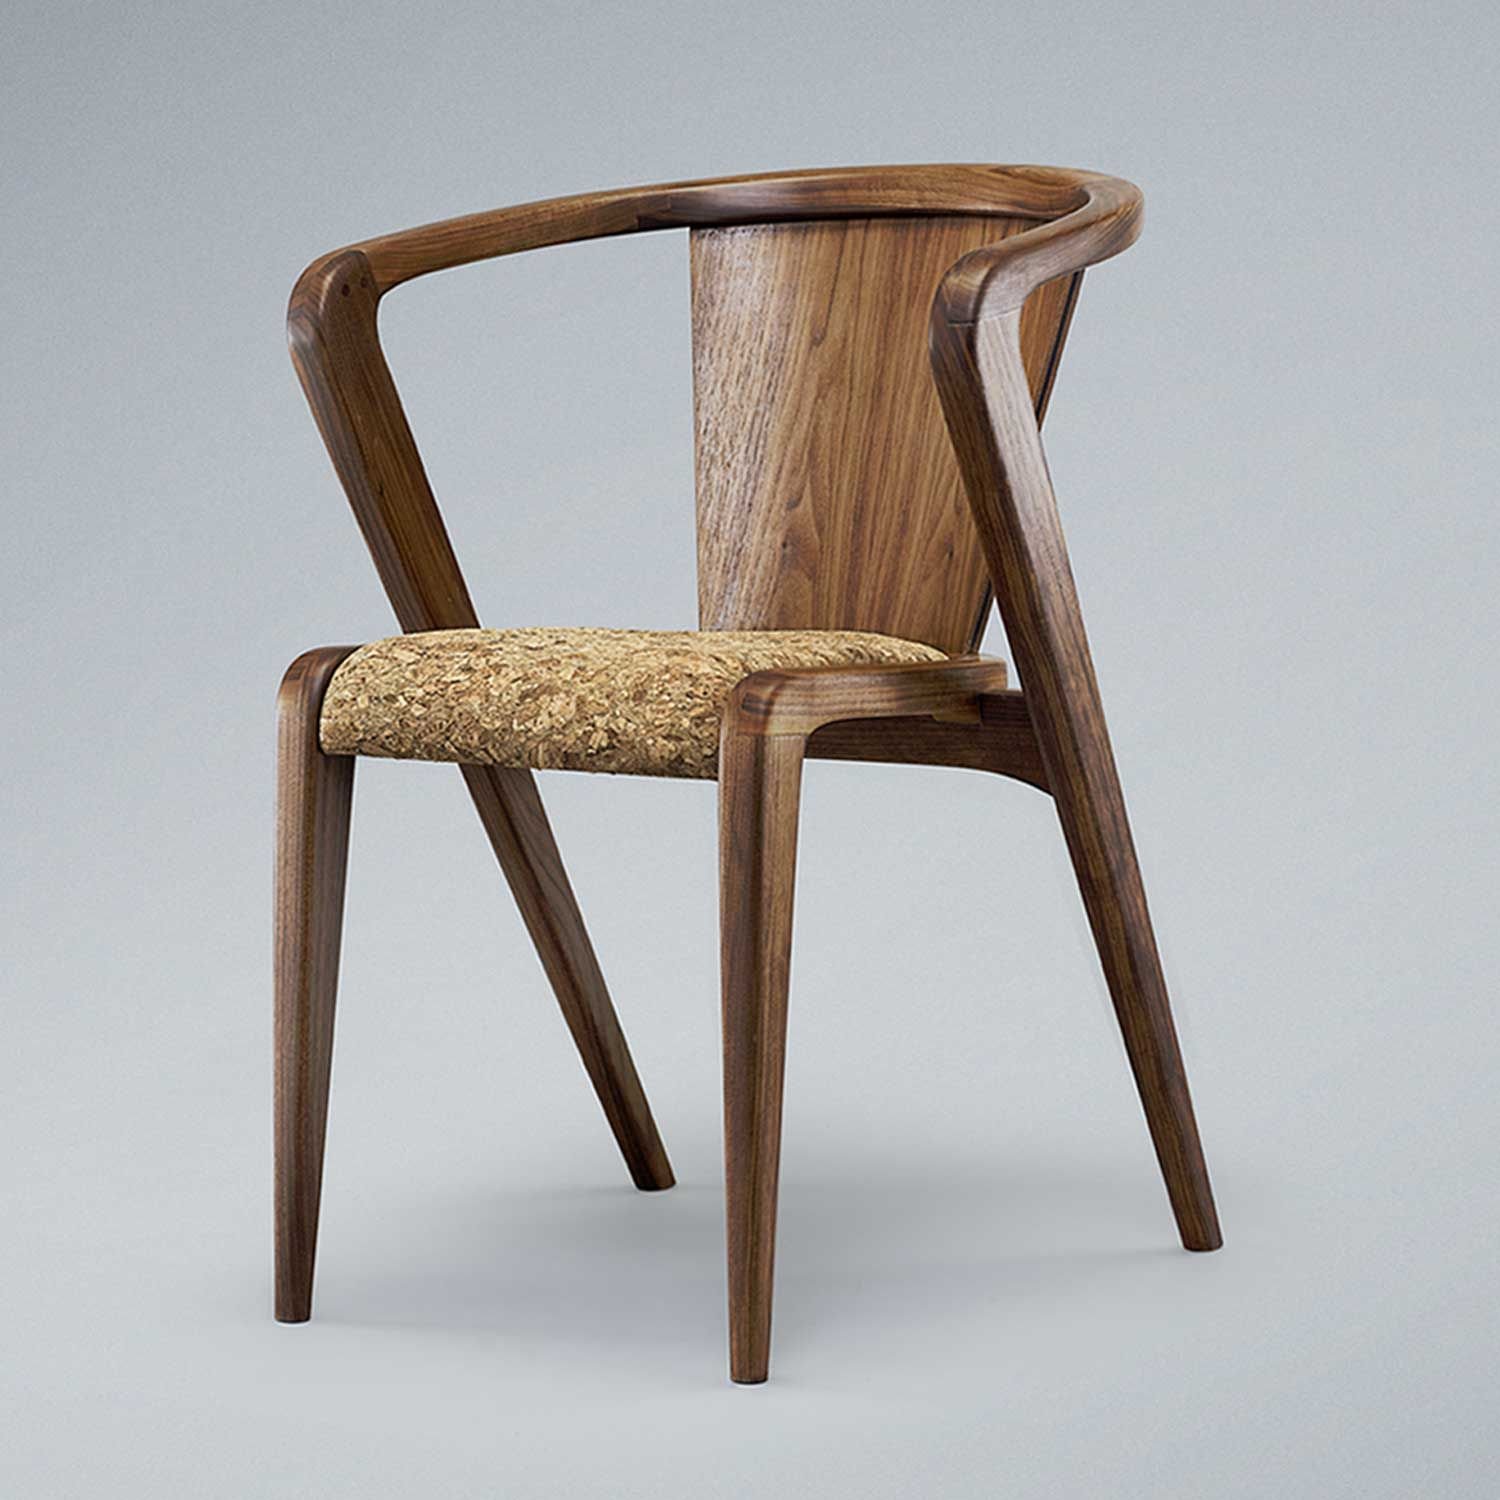 Wooden chair. Стул деревянный дизайнерский. Дизайнерские стулья из дерева. Современные деревянные стулья. Стул дерево.